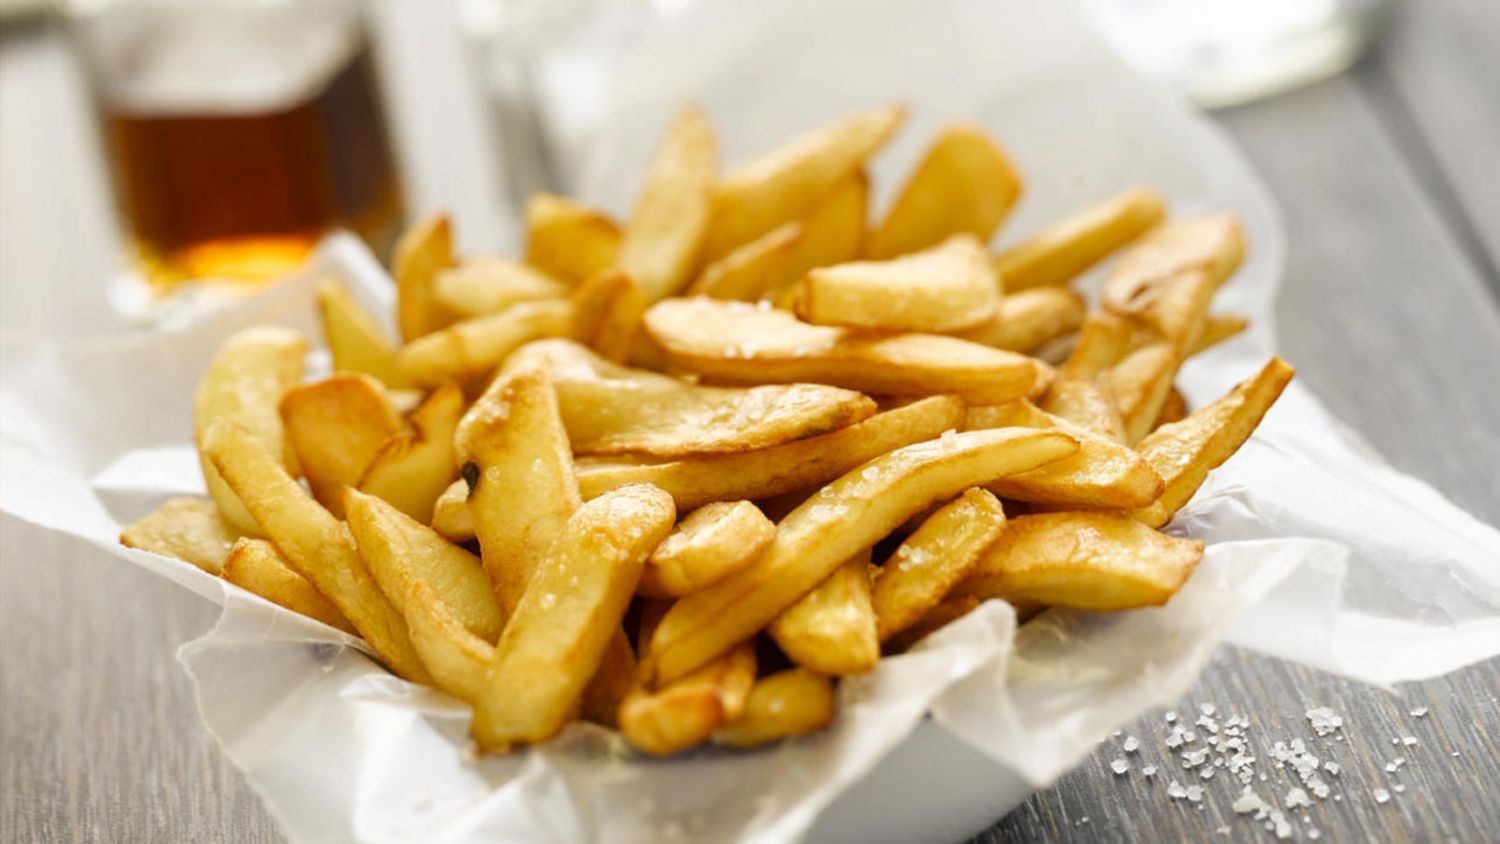 Patatas fritas crocantes: el truco para que salgan estupendas